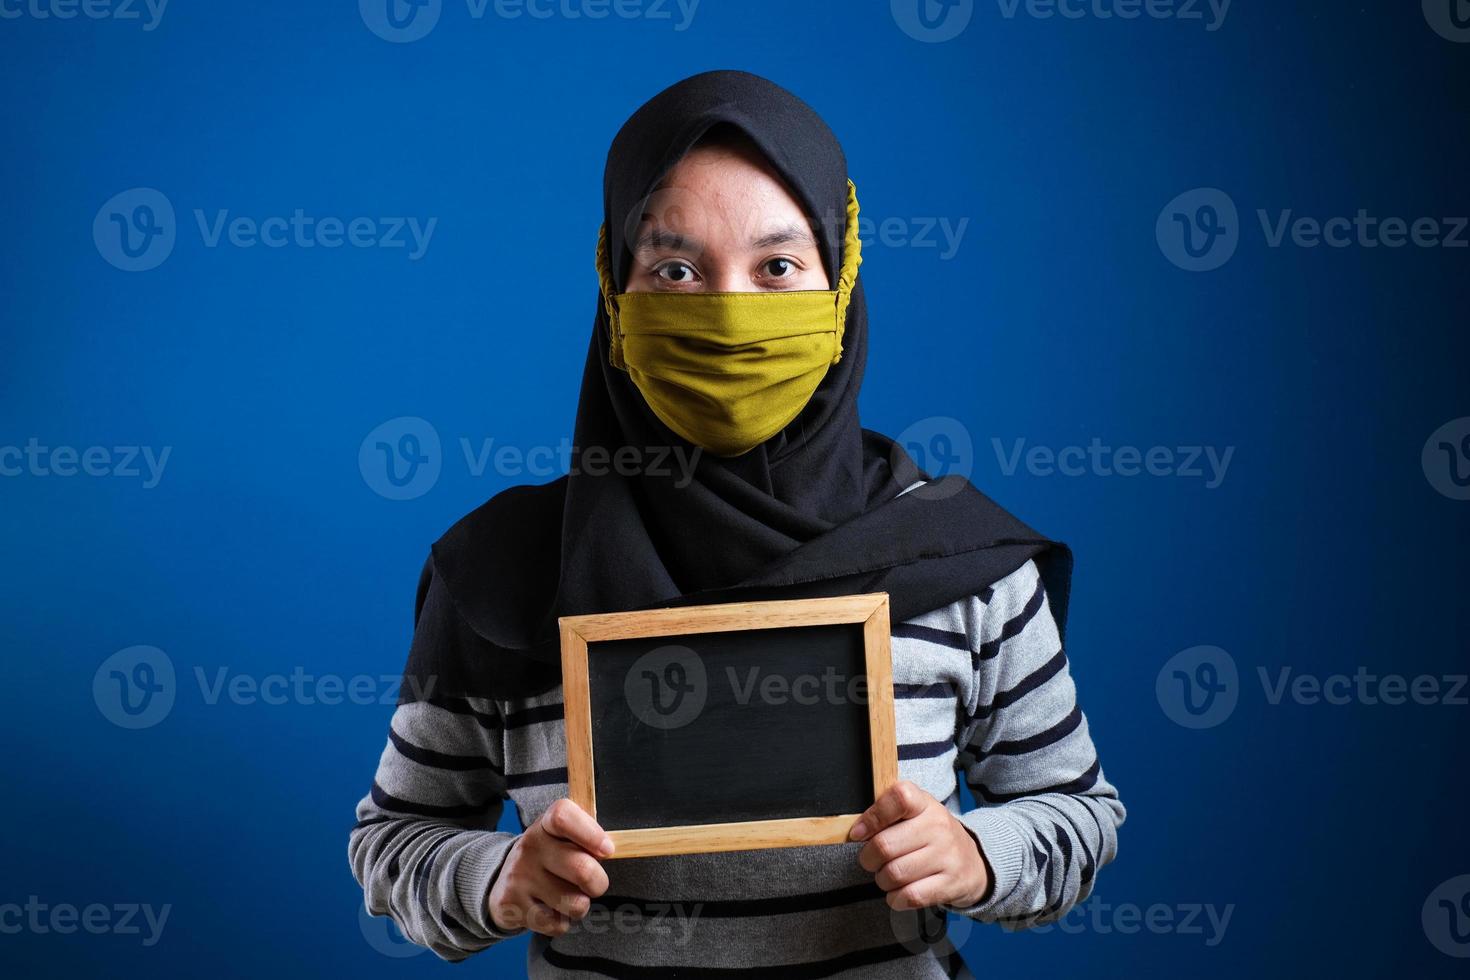 portret van een jonge aziatische vrouw die een beschermend masker draagt tegen het coronavirus, met een klein schoolbord foto